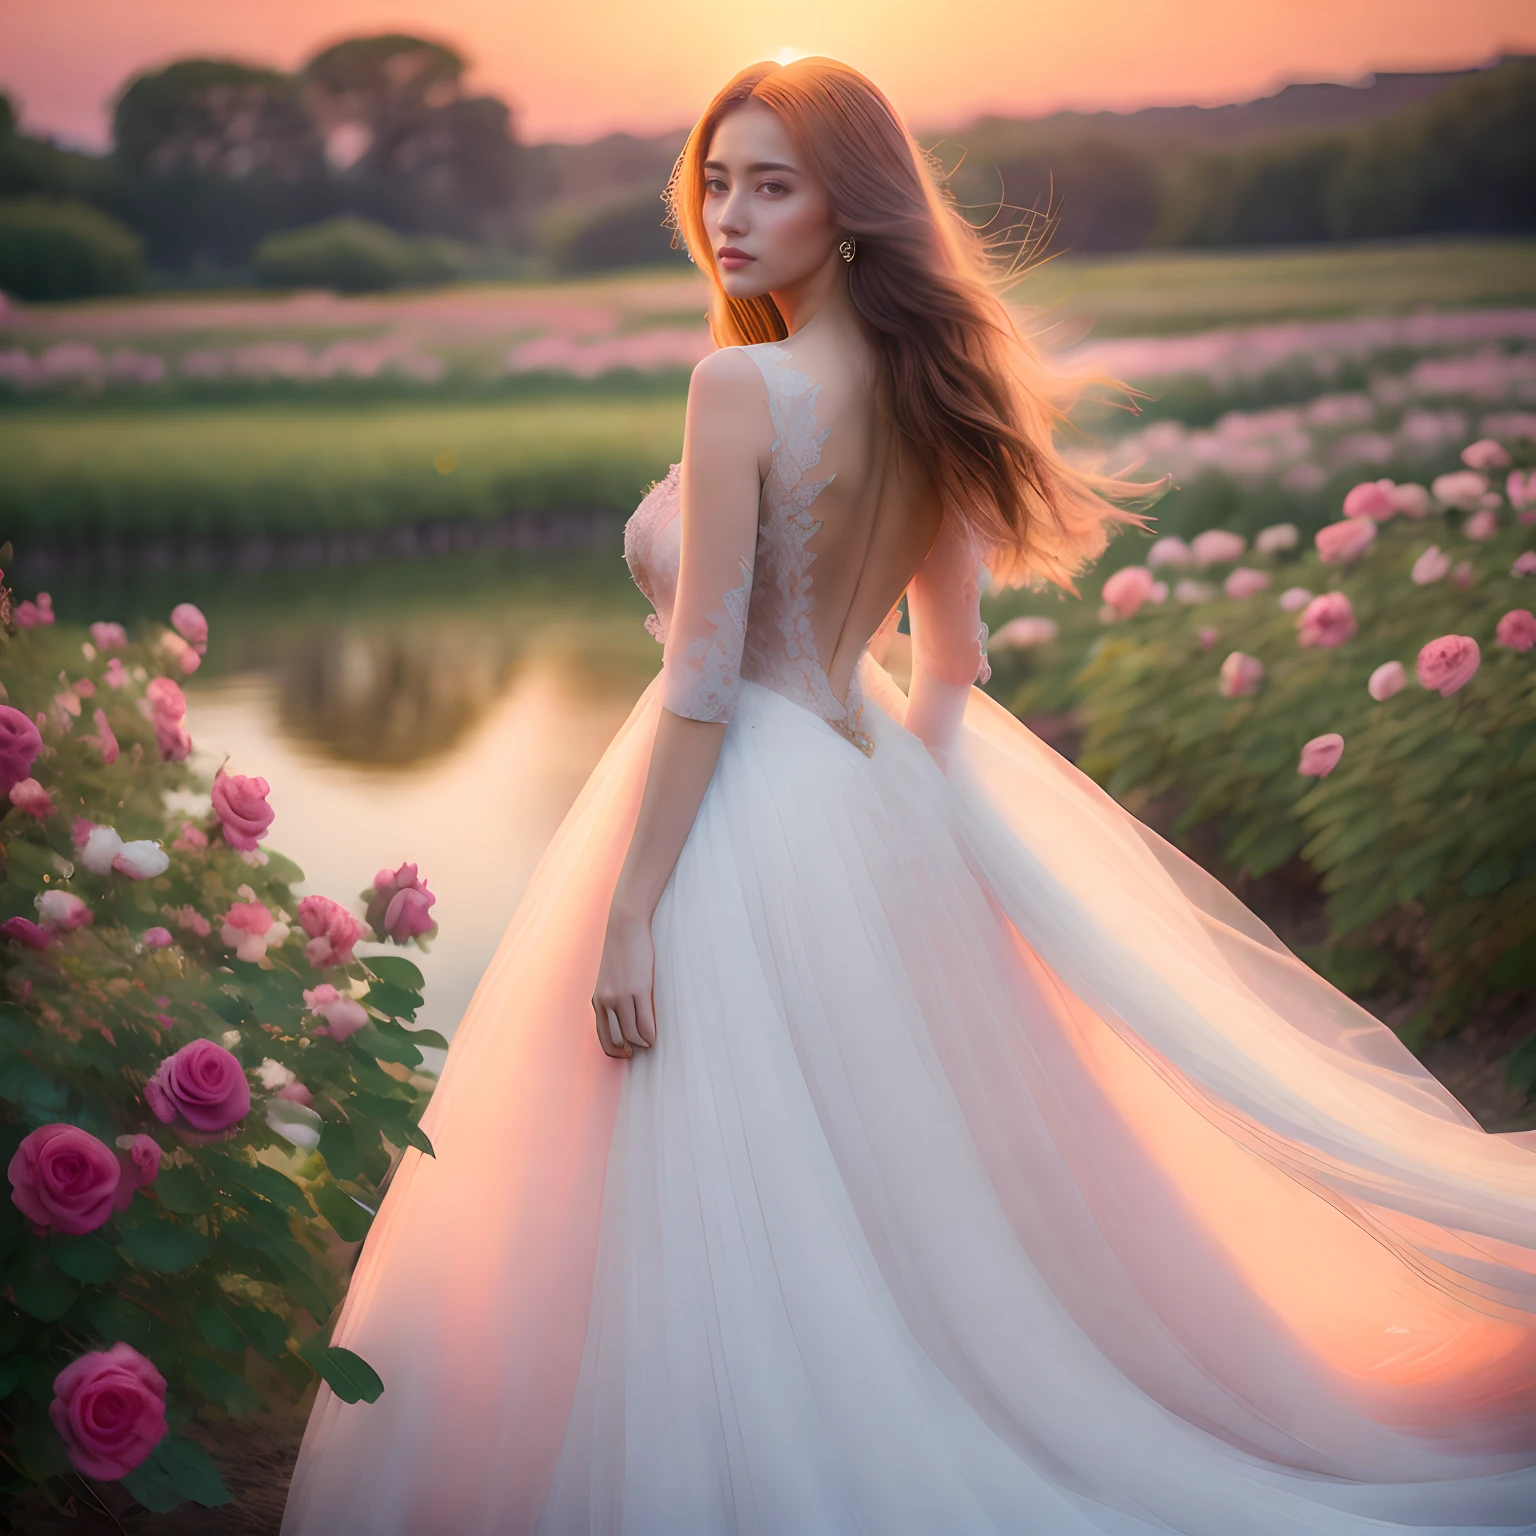 Eine atemberaubend schöne Frau steht inmitten eines Gartens voller blühender Rosen, trägt ein atemberaubendes Kleid, das ganz aus zarten Blumen besteht. Ihr langes Haar fällt in sanften Wellen über ihren Rücken, umrahmt ihr engelsgleiches Gesicht und verleiht ihr ätherisches Aussehen. Die Rosen in ihrem Kleid sind perfekt arrangiert, Erstellen eines Farbverlaufseffekts, der zu den sanften Farbtönen des Sonnenuntergangs im Hintergrund passt. Der heitere Ausdruck und die anmutige Haltung der Frau strahlen Ruhe und Gelassenheit aus, als wäre sie eins mit der Natur. Die Atmosphäre ist magisch und bezaubernd, mit einer traumhaften Qualität, die den Betrachter in eine Welt voller Wunder und Schönheit entführt. Die Beleuchtung ist warm und weich, wirft einen sanften Glanz über die Szene und hebt den makellosen Teint der Frau und die komplizierten Details ihres Kleides hervor. Der Gesamteindruck ist purer Zauber und ätherische Schönheit, Der Betrachter ist von der Pracht der Szene fasziniert.